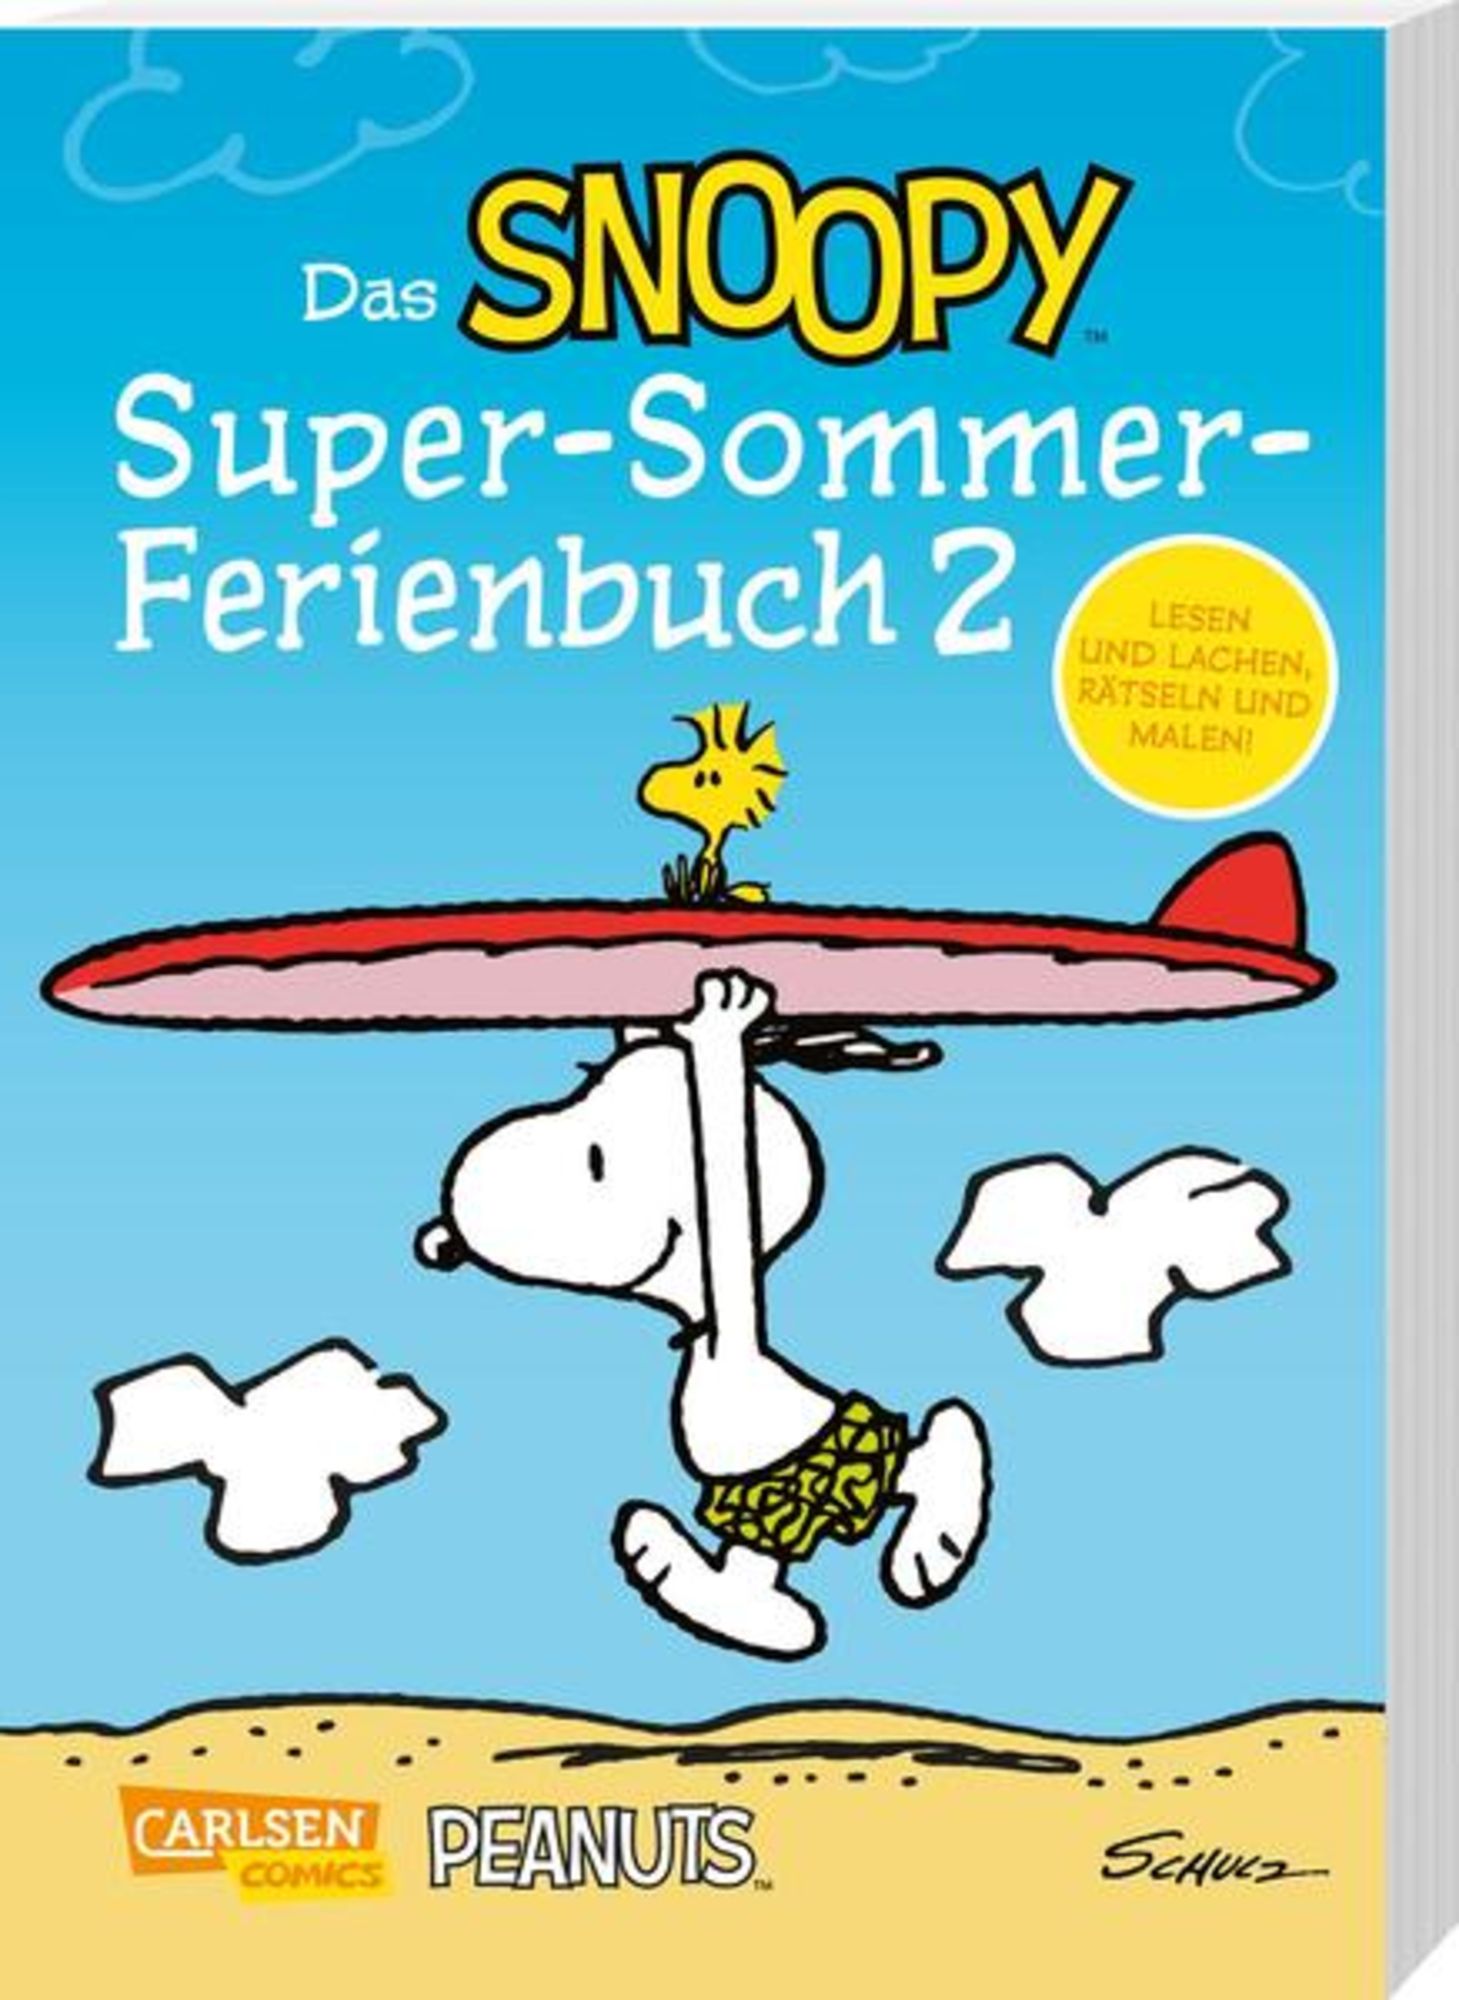 https://images.thalia.media/-/BF2000-2000/b44324756b68423c98a3b1ed0d9705ea/das-snoopy-super-sommer-ferienbuch-teil-2-taschenbuch-charles-m-schulz.jpeg